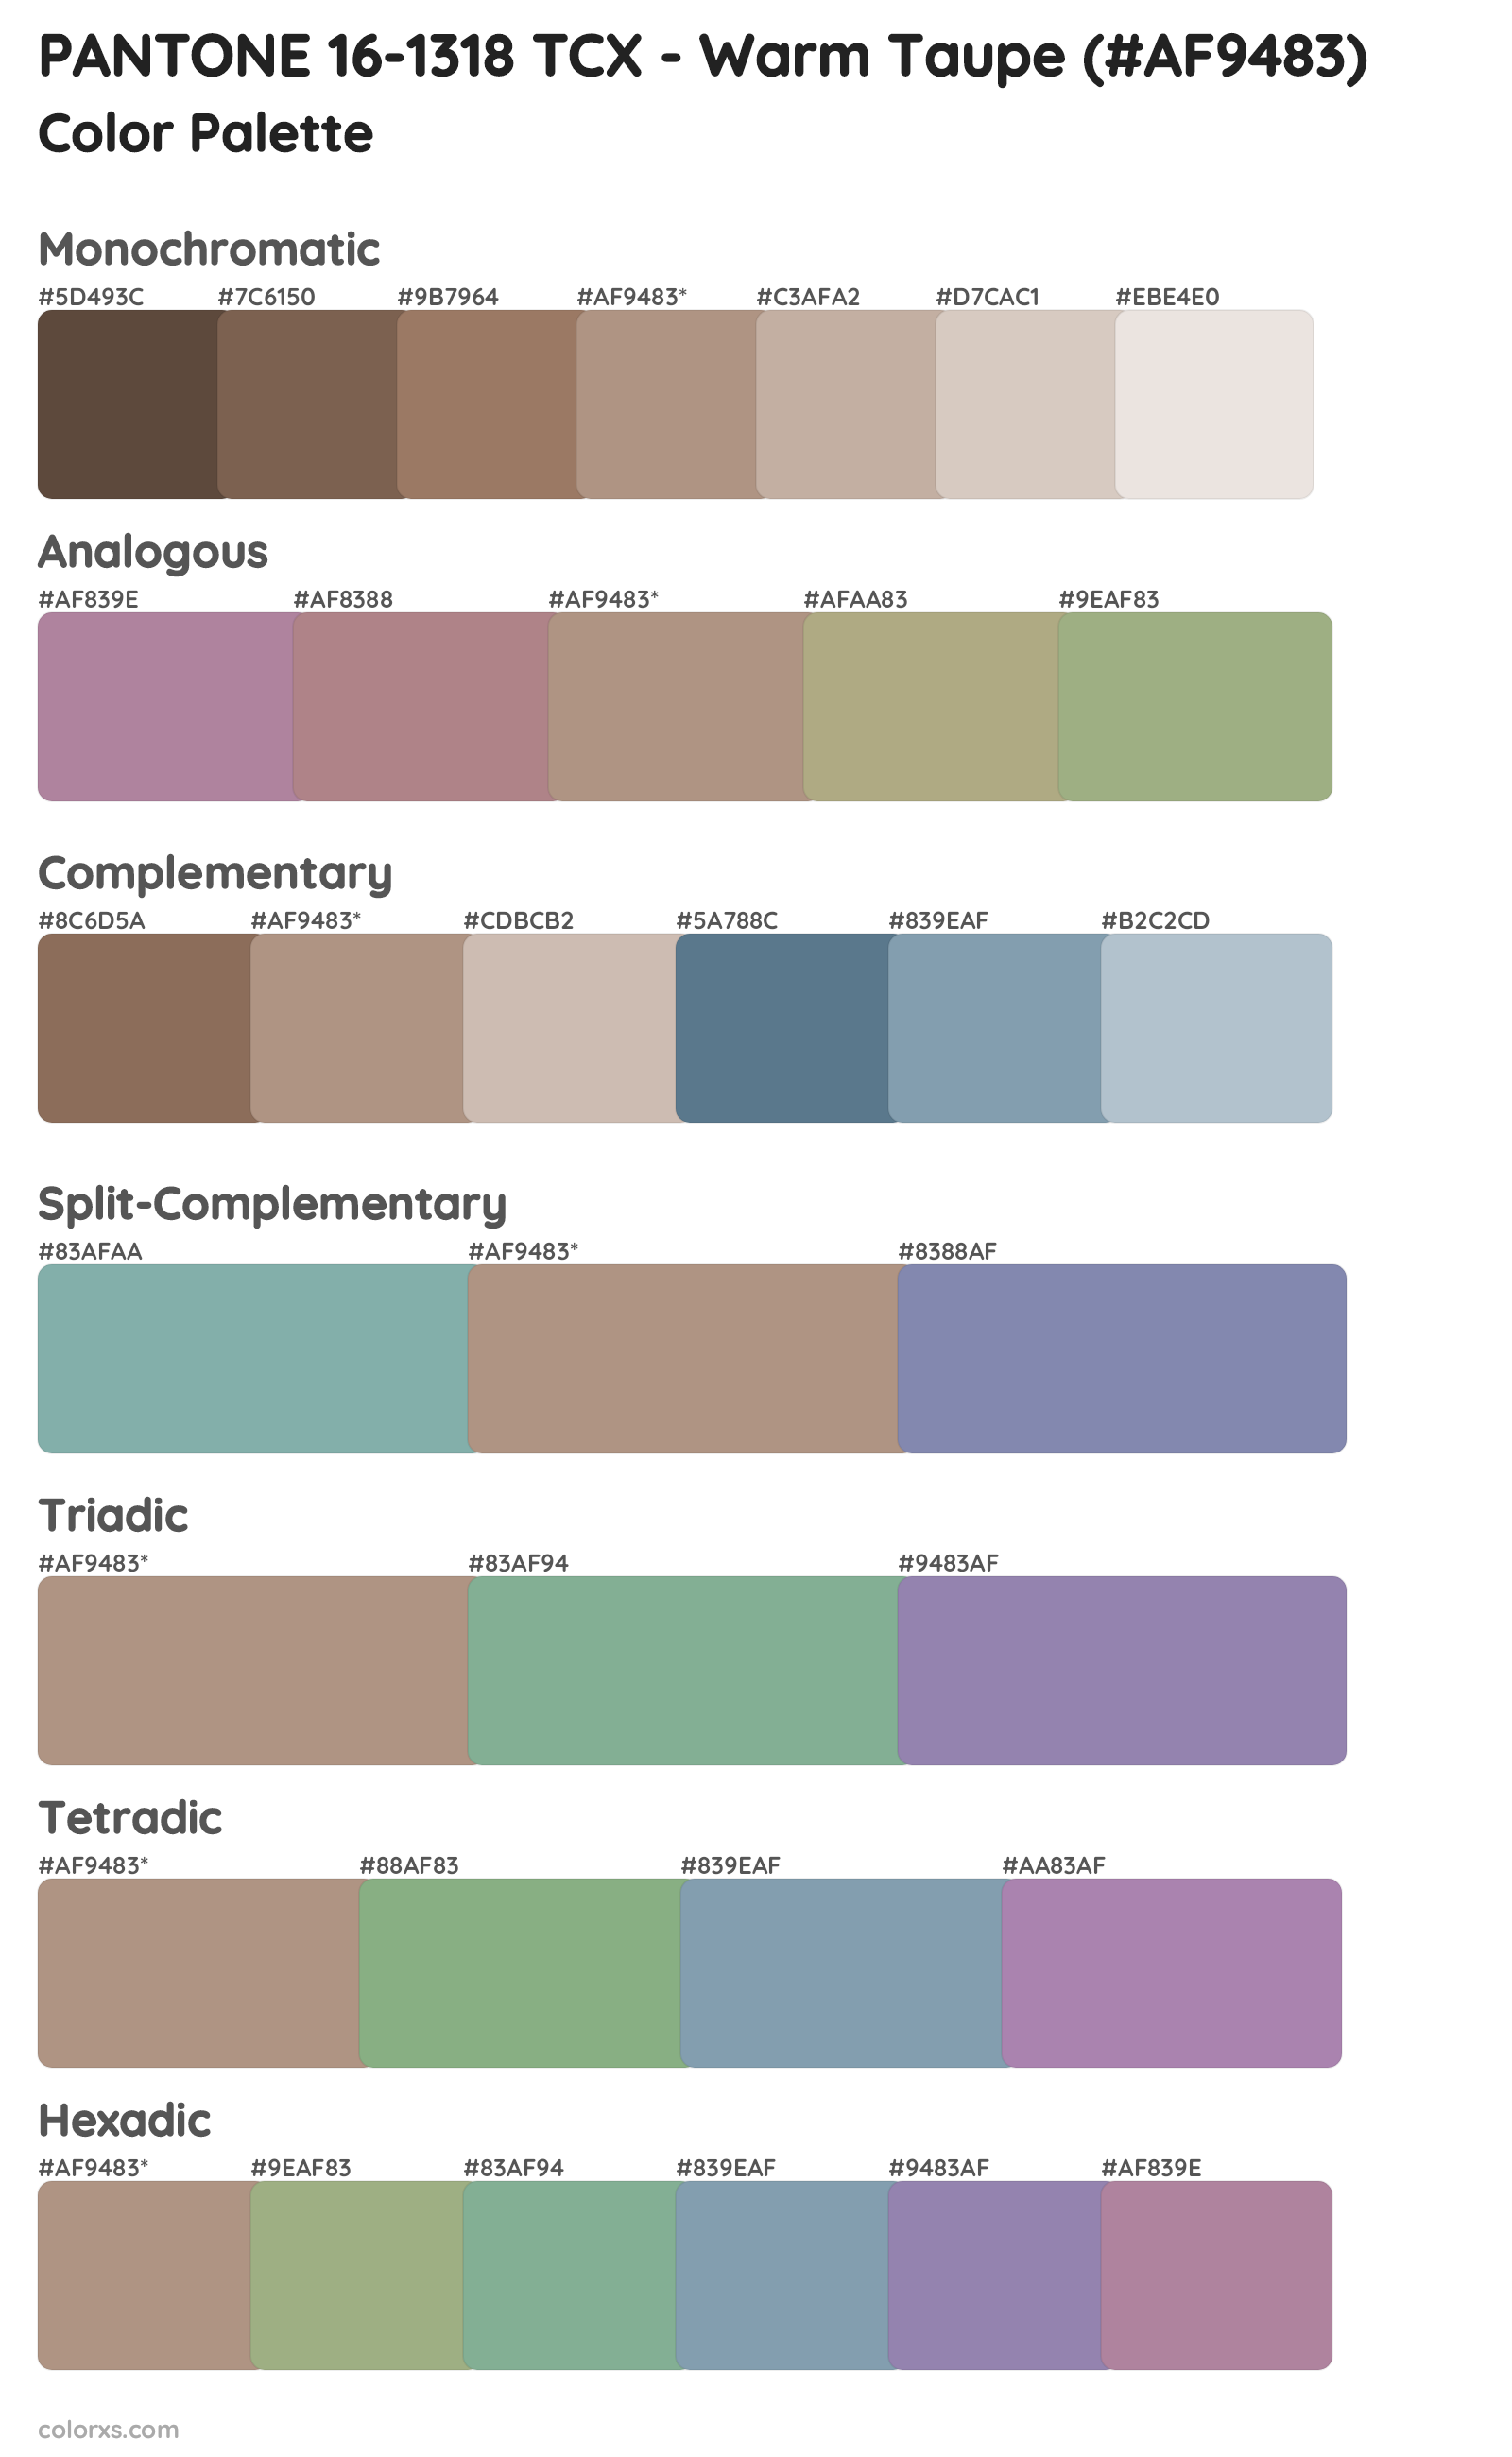 PANTONE 16-1318 TCX - Warm Taupe color palettes and color scheme ...